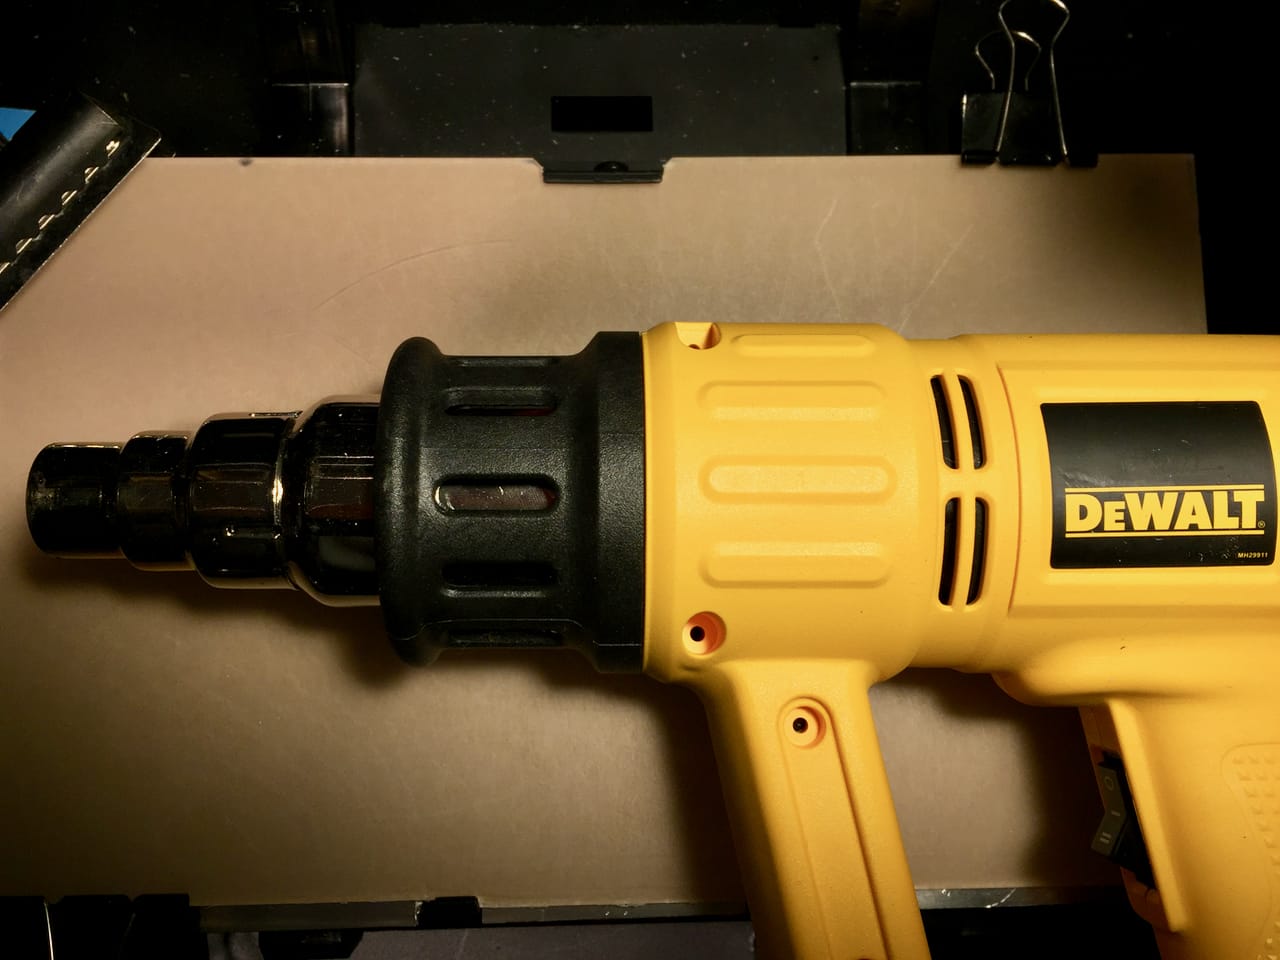  An essential tool for 3D printing: a heat gun 